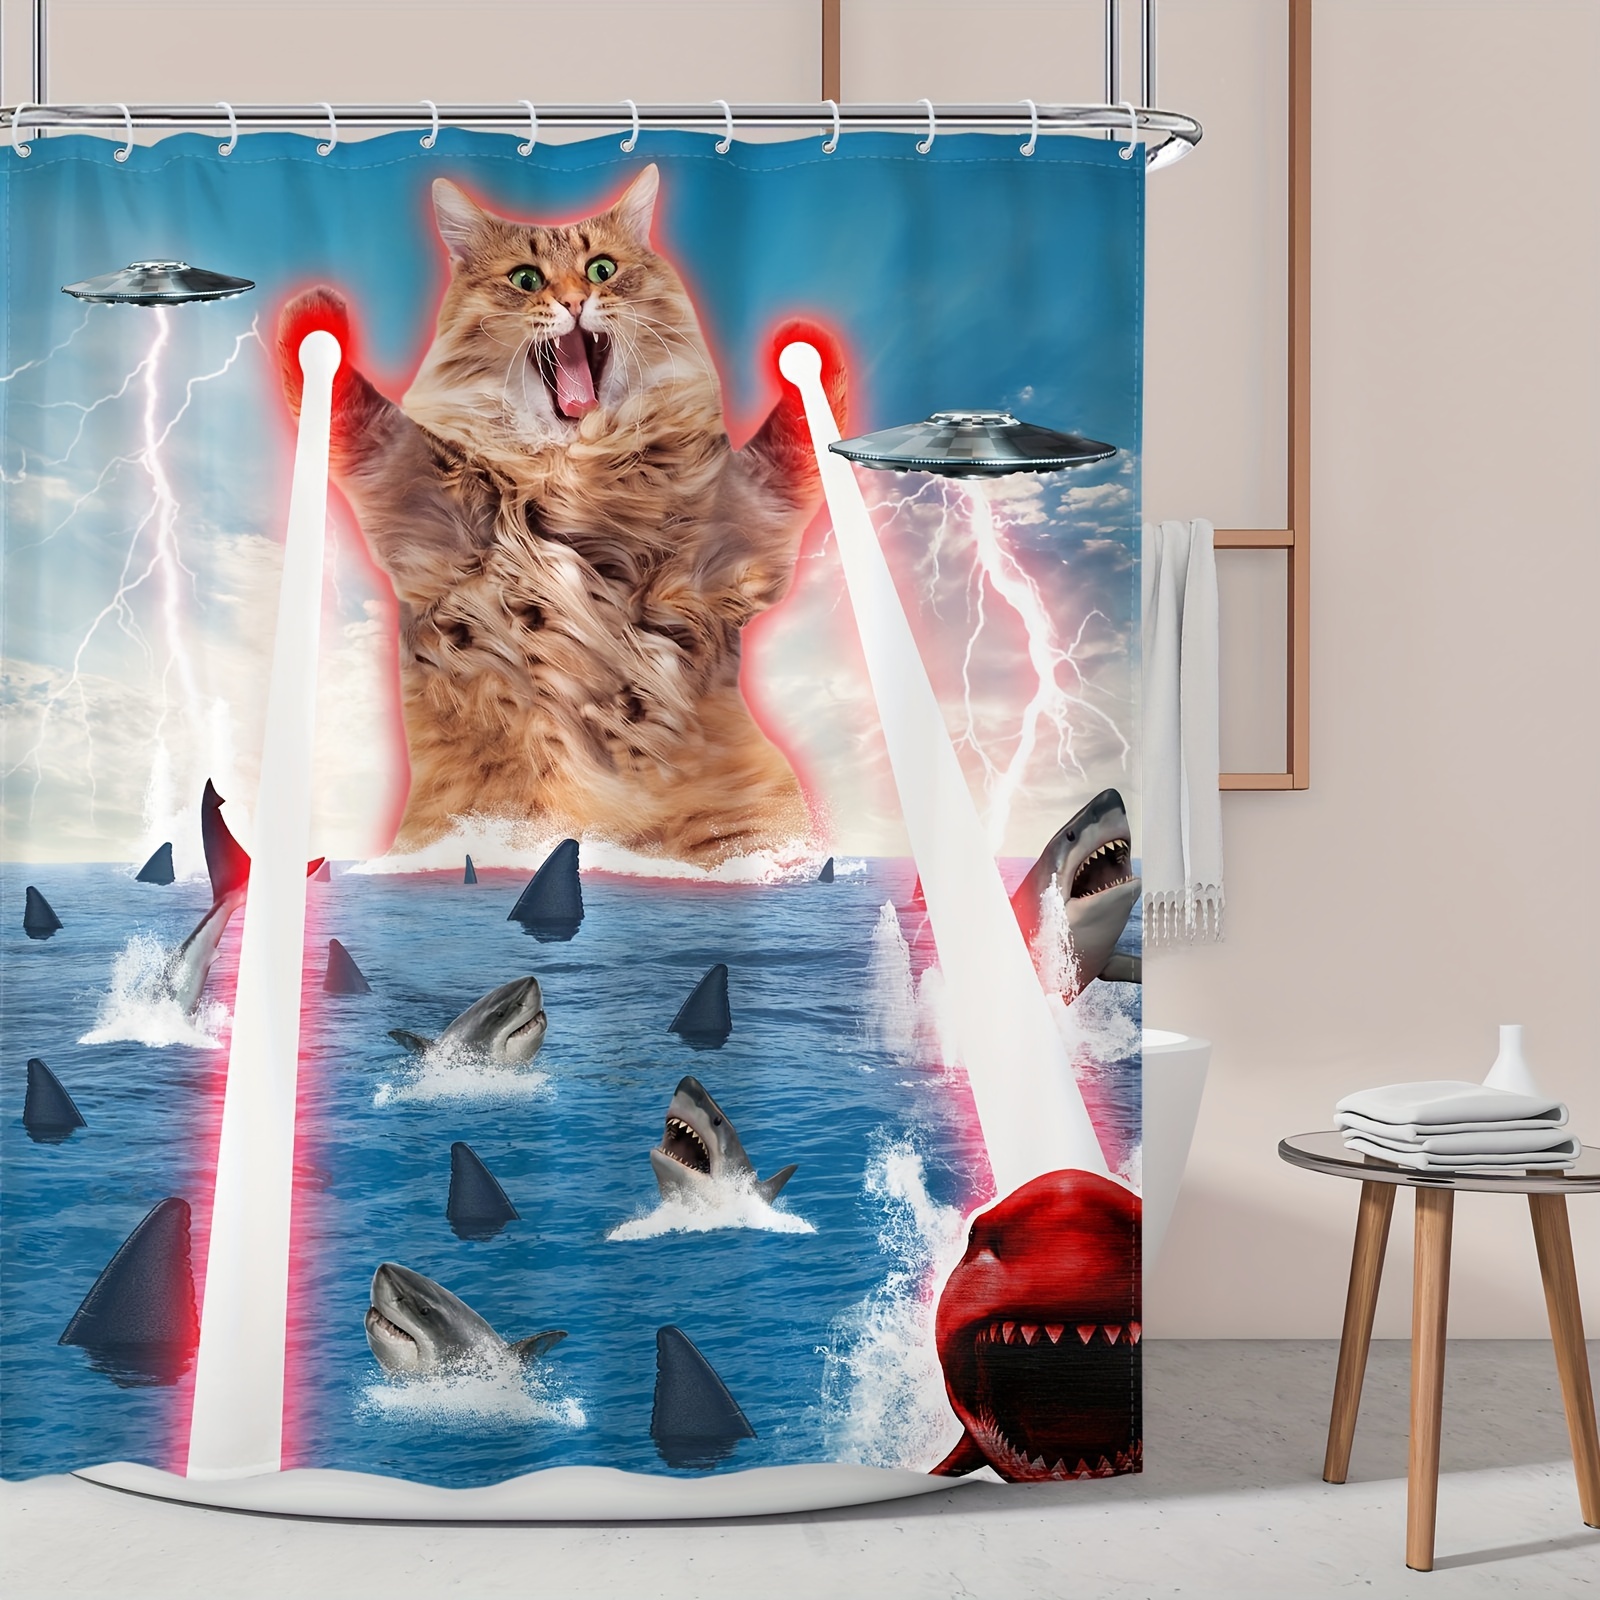  DESIHOM Divertidas cortinas de ducha extra largas de 84  pulgadas, juego de cortina de ducha con temática de tiburón y equitación de  gatos, juego de cortina de ducha divertida náutica para